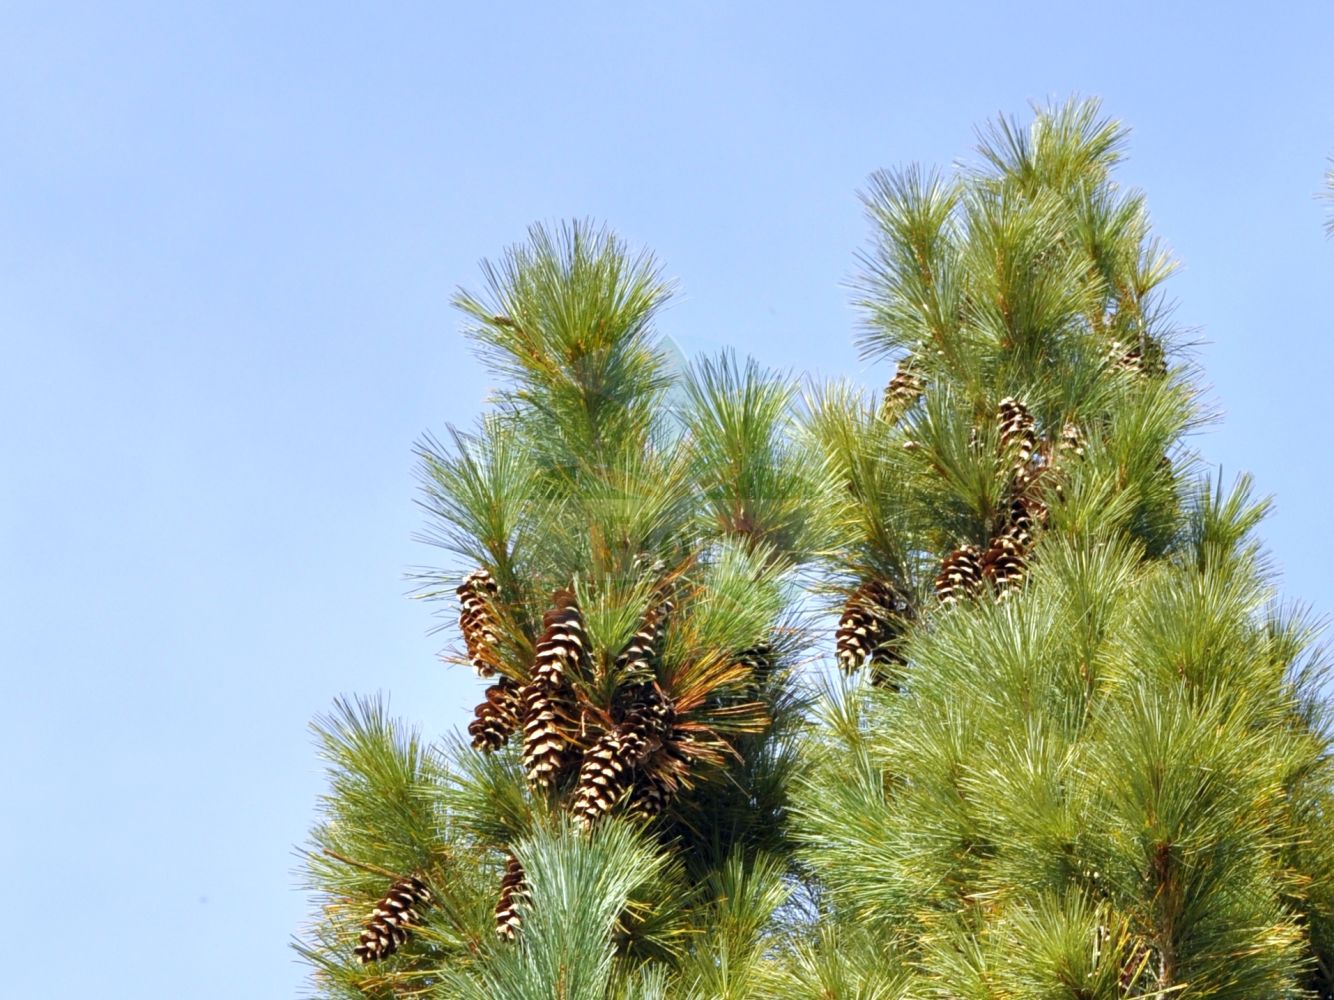 Foto von Pinus strobus (Weymouth-Kiefer - Weymouth Pine). Das Foto wurde in Eschborn, Hessen, Deutschland aufgenommen. ---- Photo of Pinus strobus (Weymouth-Kiefer - Weymouth Pine). The picture was taken in Eschborn, Hesse, Germany.(Pinus strobus,Weymouth-Kiefer,Weymouth Pine,Pinus strobus,Weymouth-Kiefer,Weymouth Pine,Eastern White Pine,Northern White Pine,White Pine,Yellow Pine,Pinus,Kiefer,Pine,Pinaceae,Kieferngewächse,Pine family)